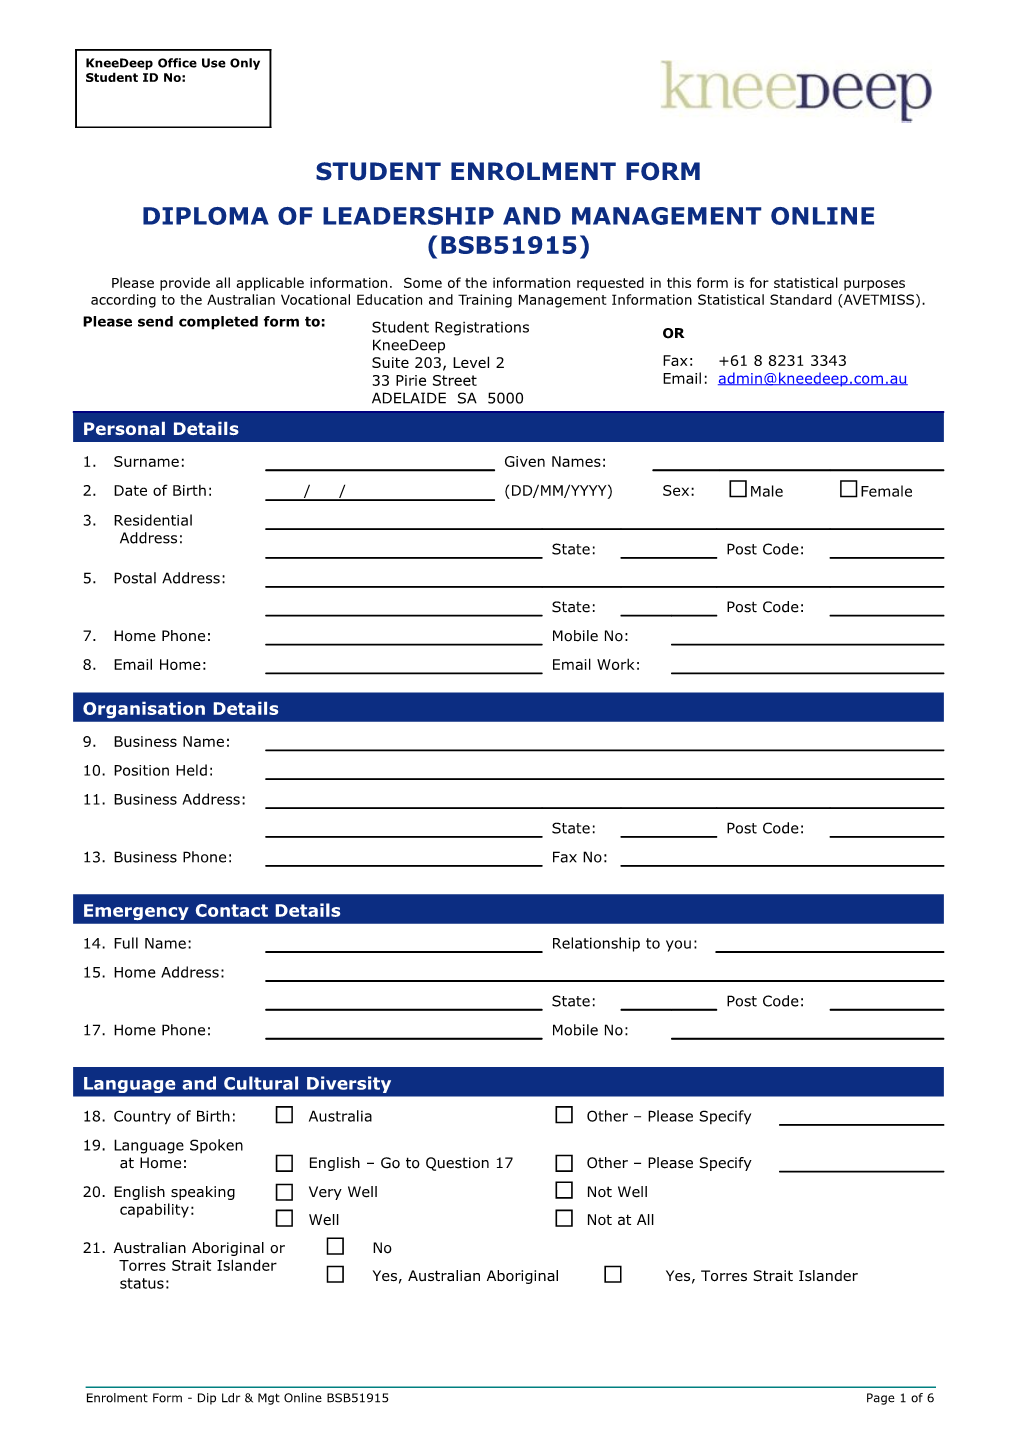 Dip Ldr & Mgt Enrolment Form